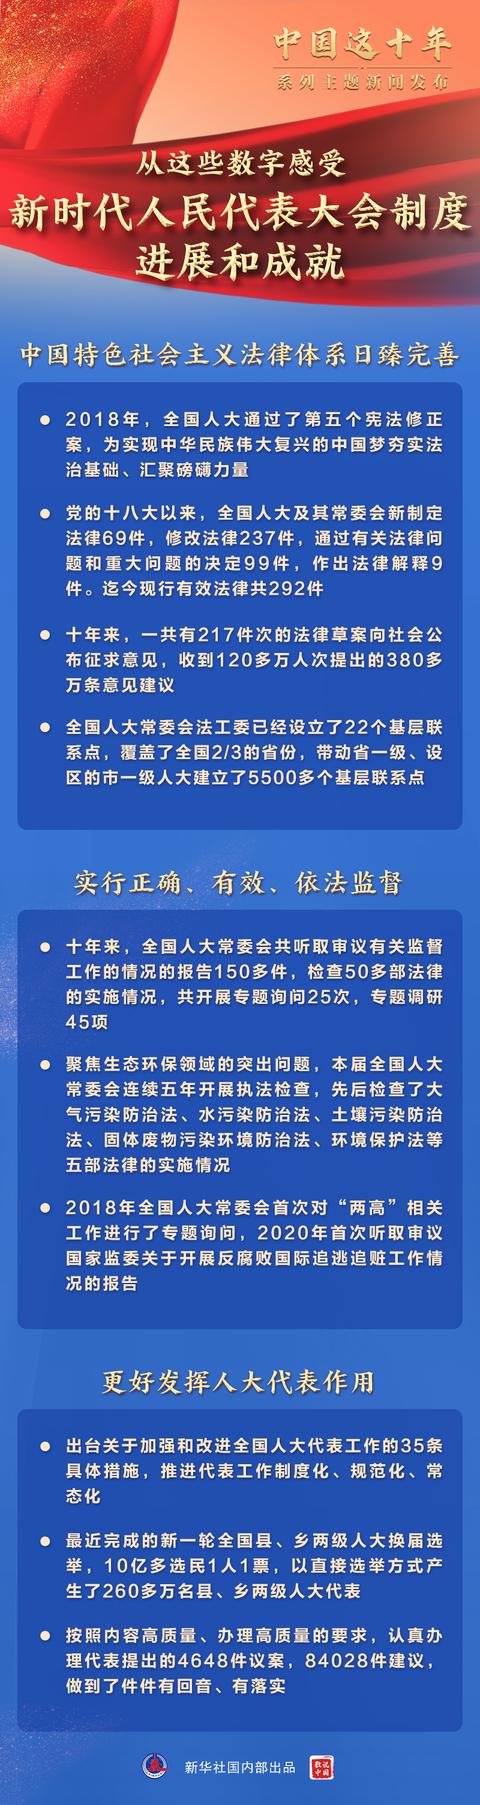 “中国这十年”系列主题新闻发布会聚焦新时代坚持和完善人民代表大会制度进展和成就